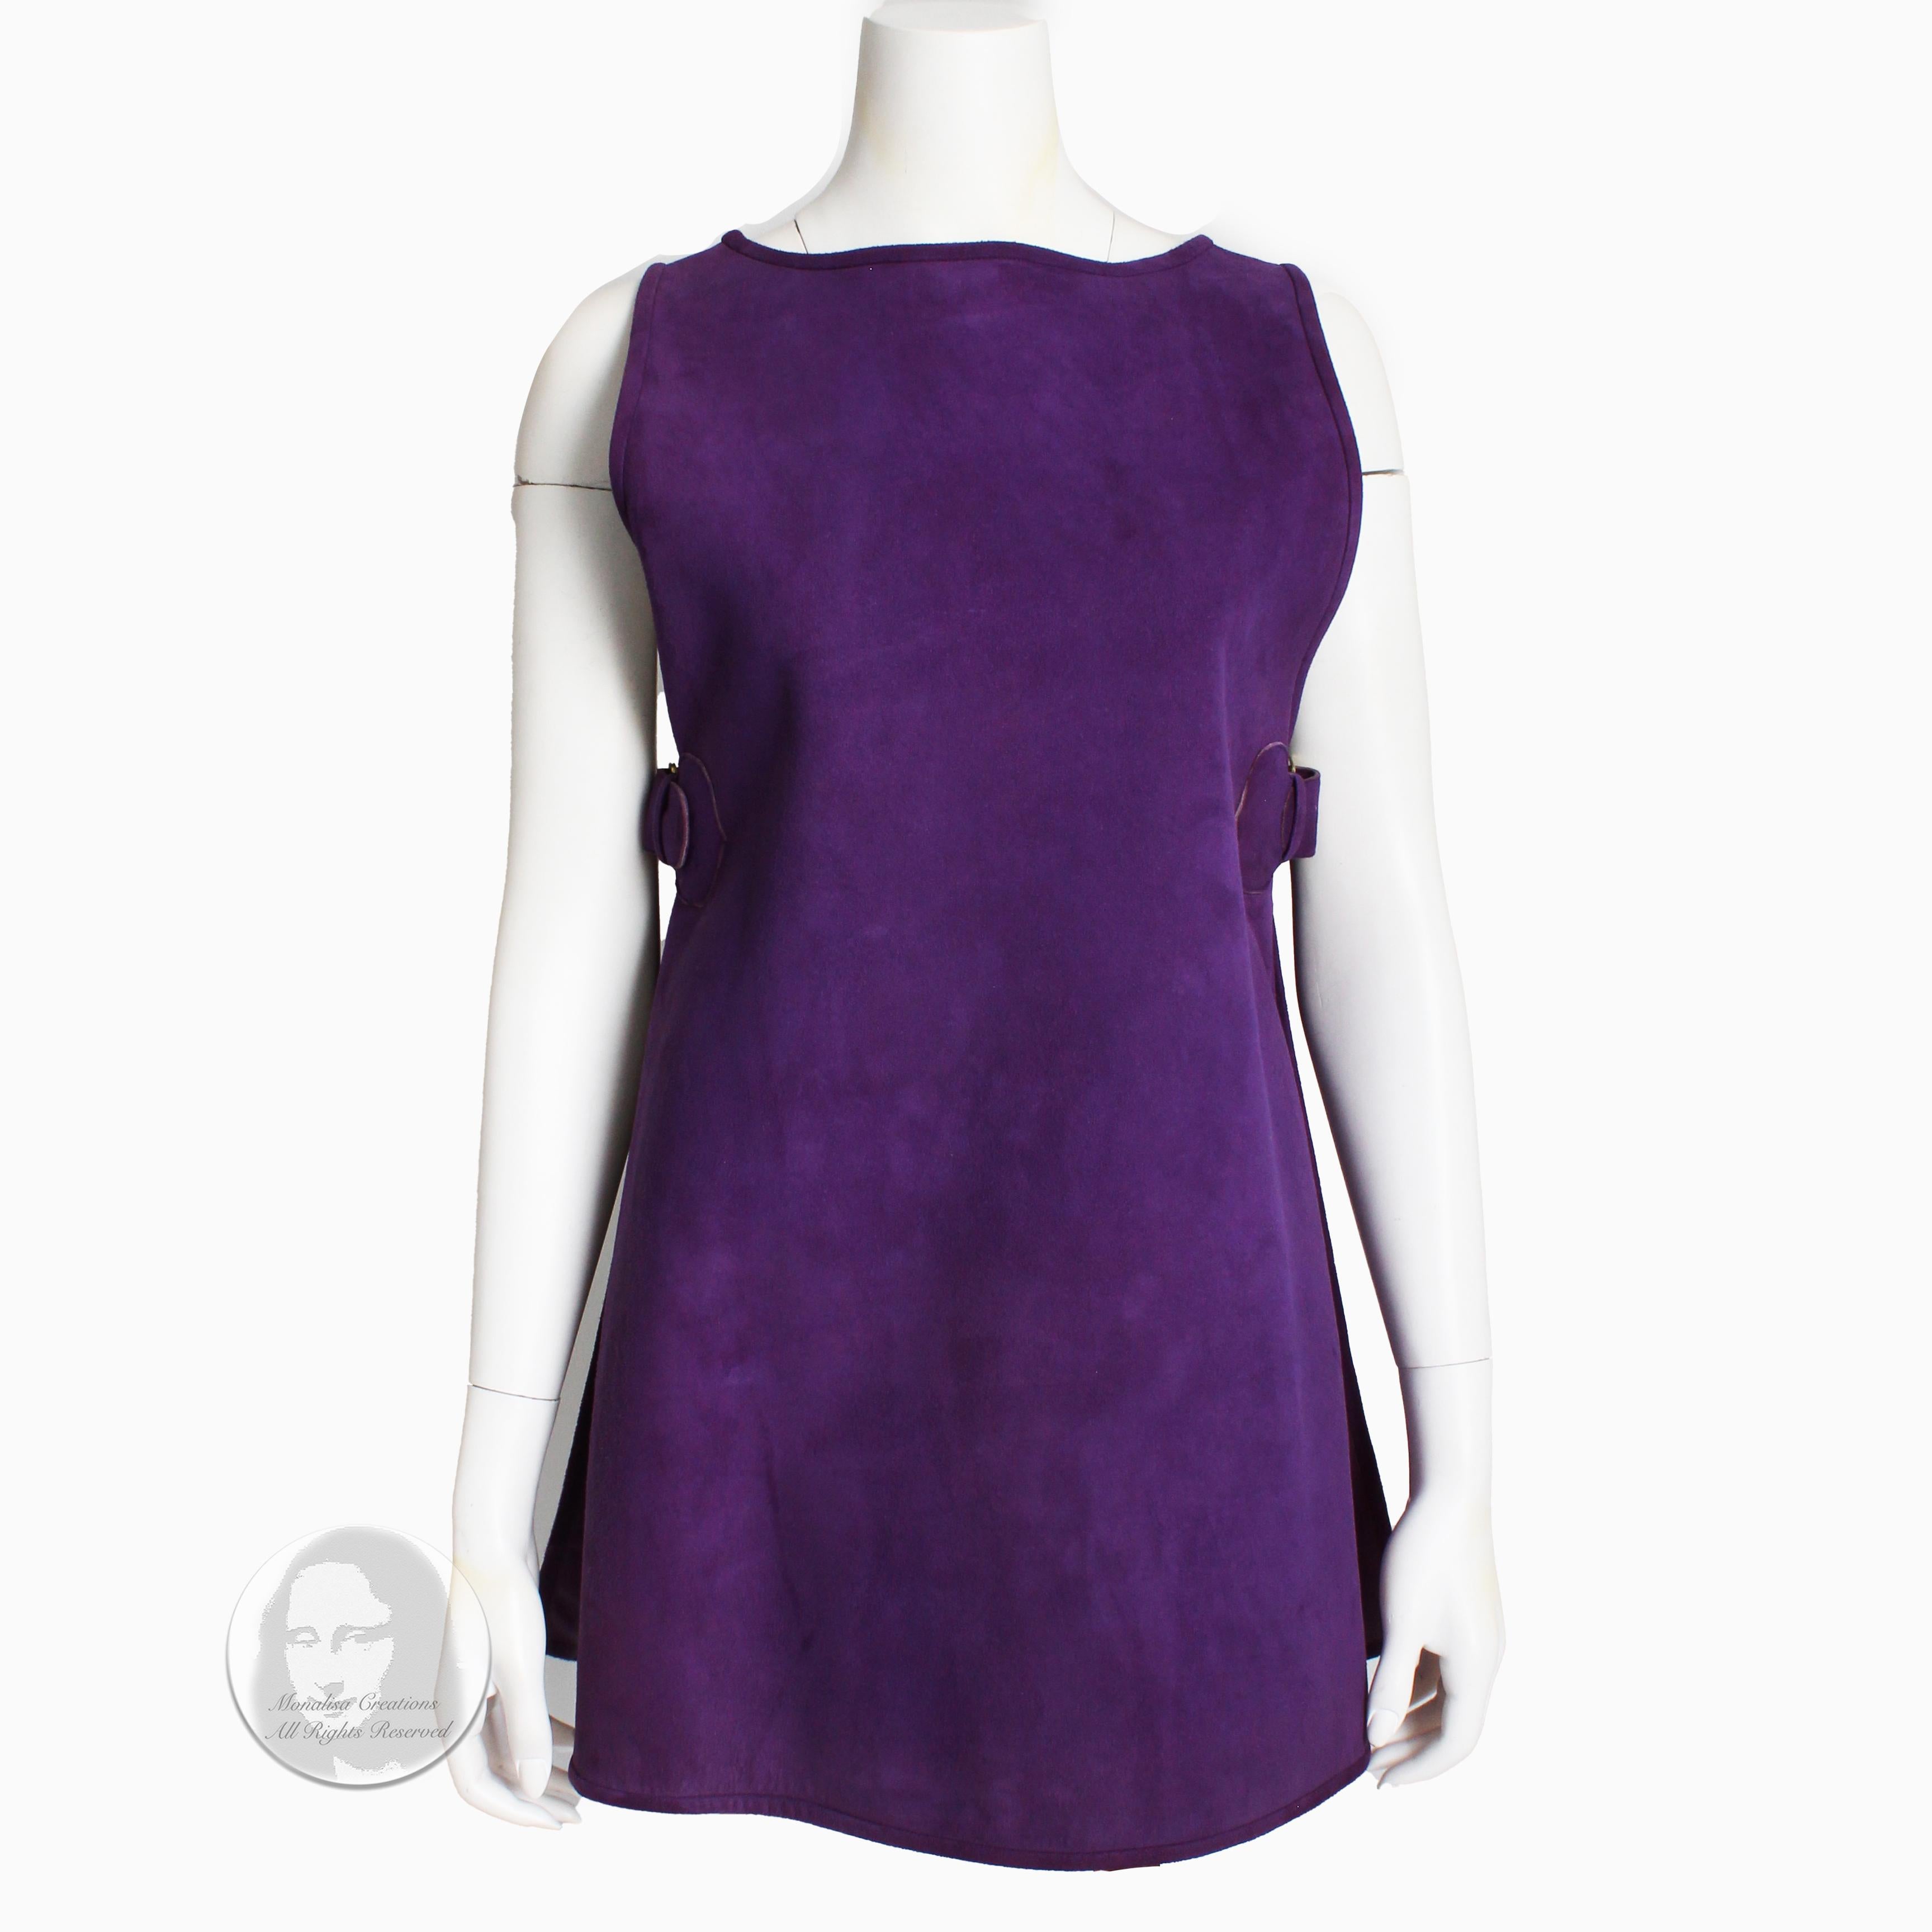 Authentique robe tunique ou tabard vintage Bonnie Cashin for Sills en daim violet lilas, probablement fabriqué dans les années 60. Vendue à l'origine par Saks 5th Avenue, où elle était vendue au détail pour 100 $ (ce qui vaut aujourd'hui 110 $ en